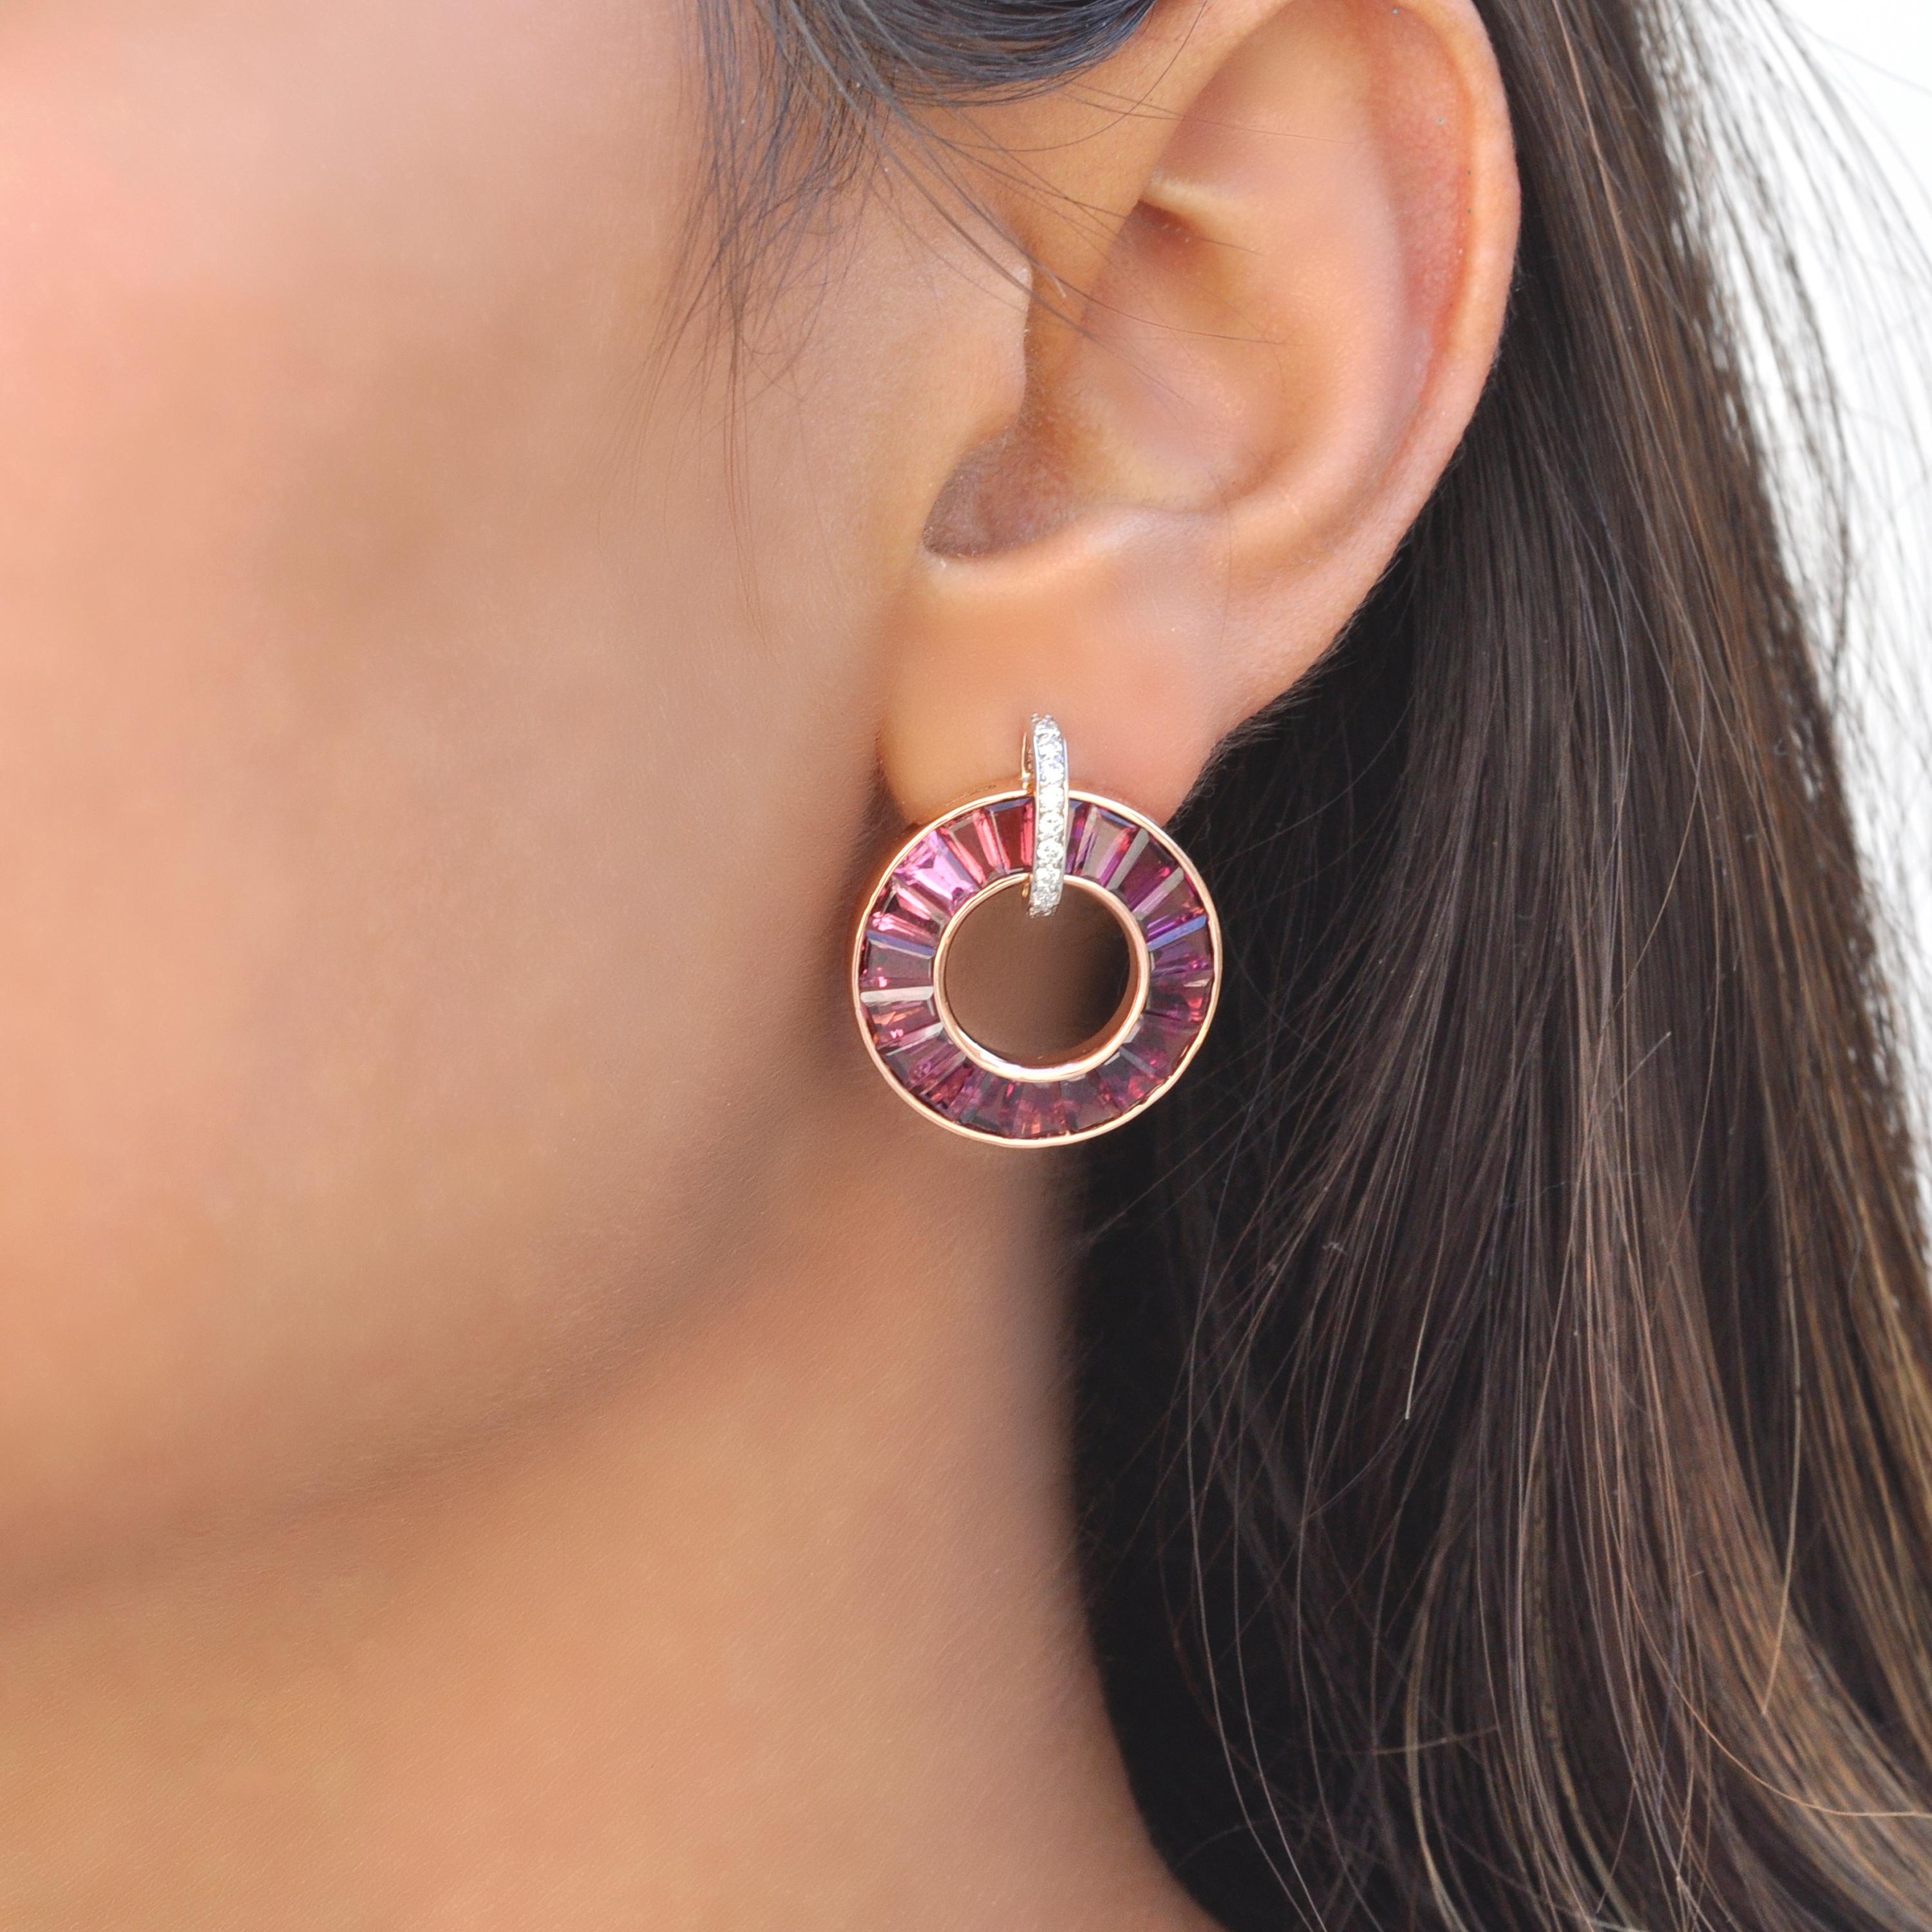 Les boucles d'oreilles en or rose 18 carats avec grenat rhodolite et diamant sont une fusion d'opulence et de sophistication. Réalisées en or rose lustré 18 carats, ces boucles d'oreilles présentent des baguettes effilées de rhodolites dans une